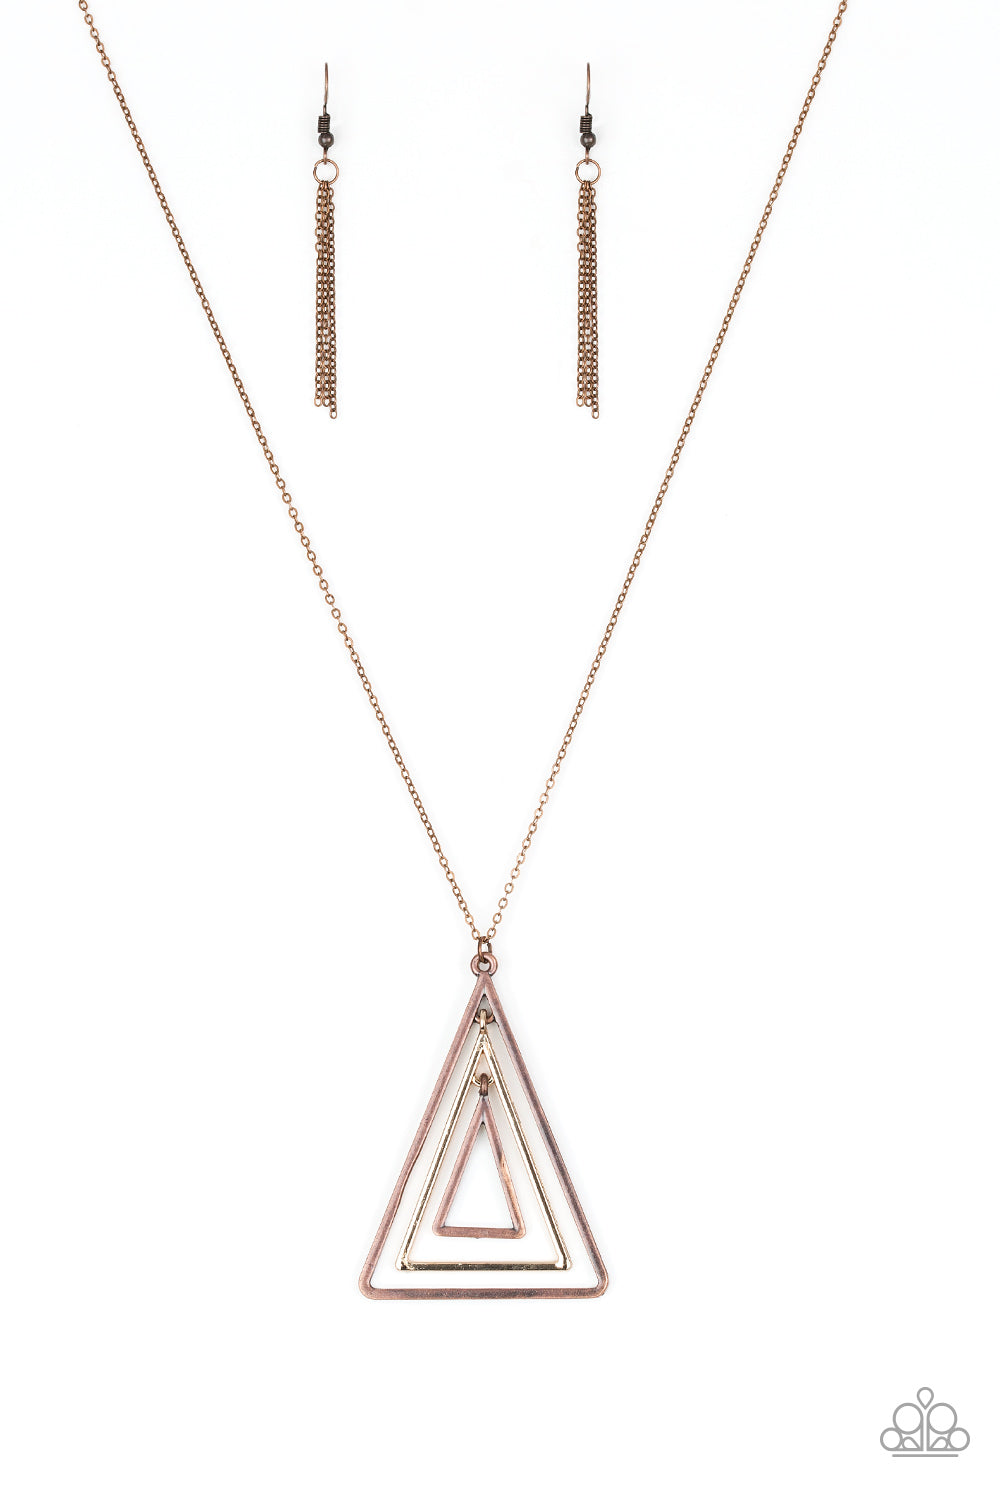 TRI Harder - copper - Paparazzi necklace